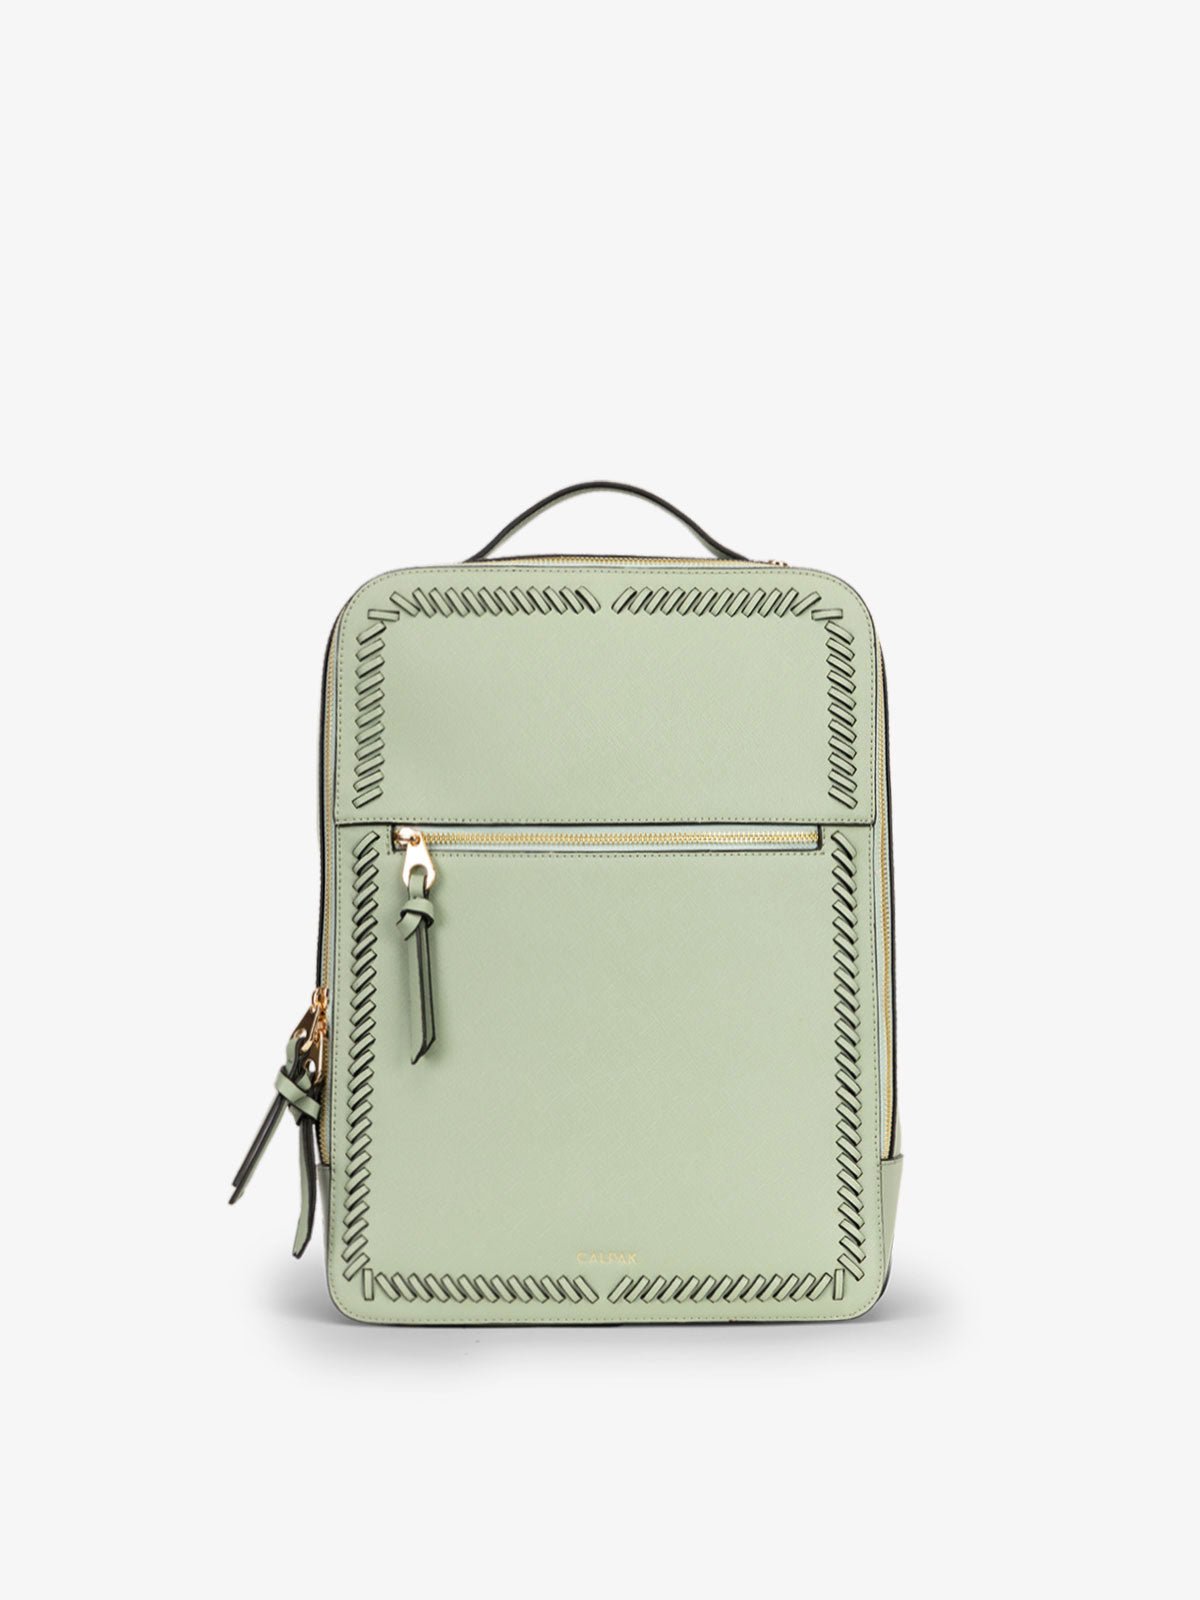 CALPAK Kaya 15 inch Laptop Backpack for women in green spearmint